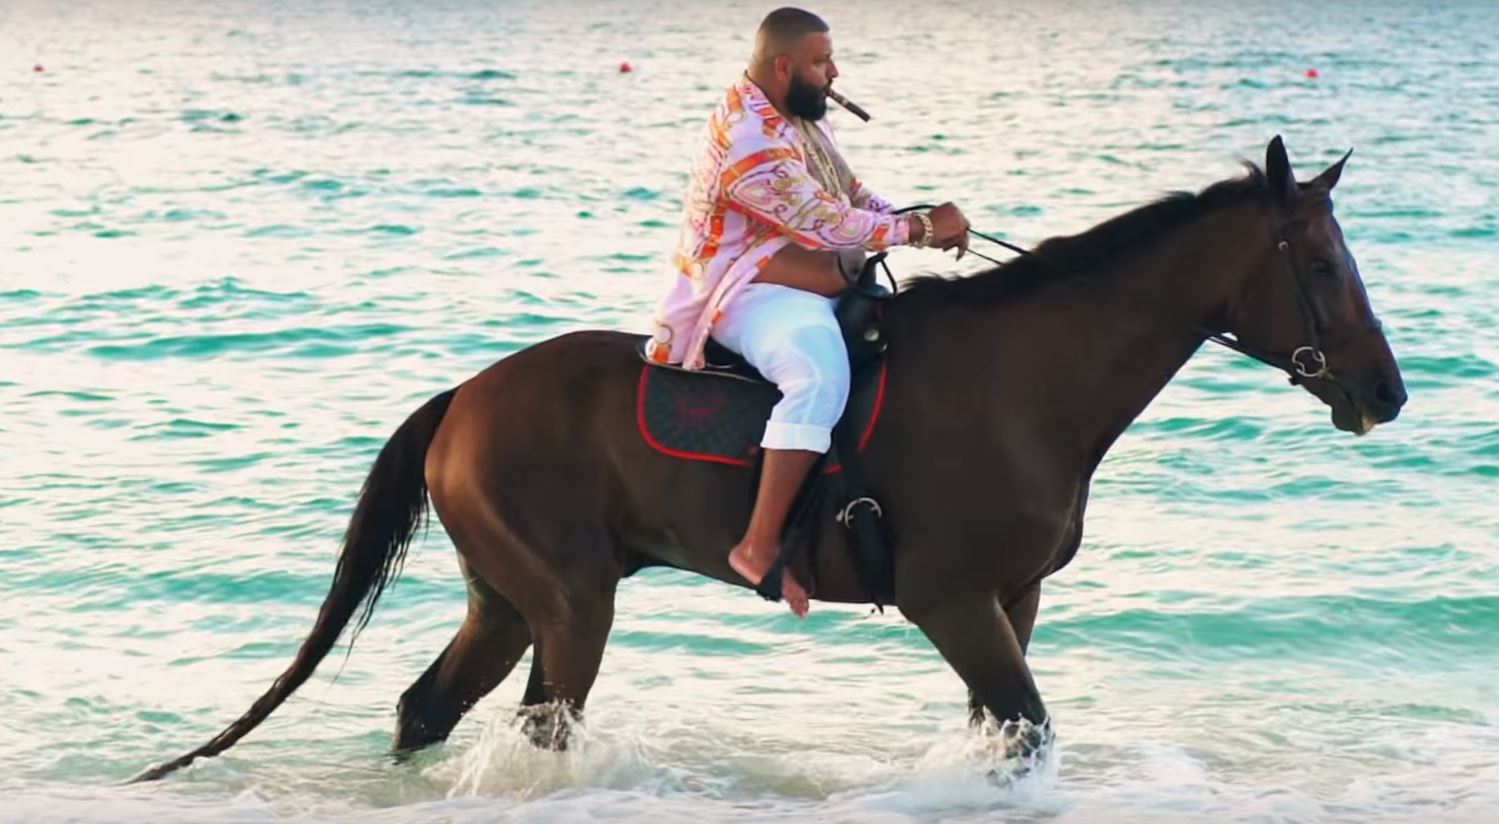 Βίντεο: Κατηγόρησαν τον DJ Khaled πως έσπασε την πλάτη αλόγου – Φέρεται να πλήρωσε για την ευθανασία!